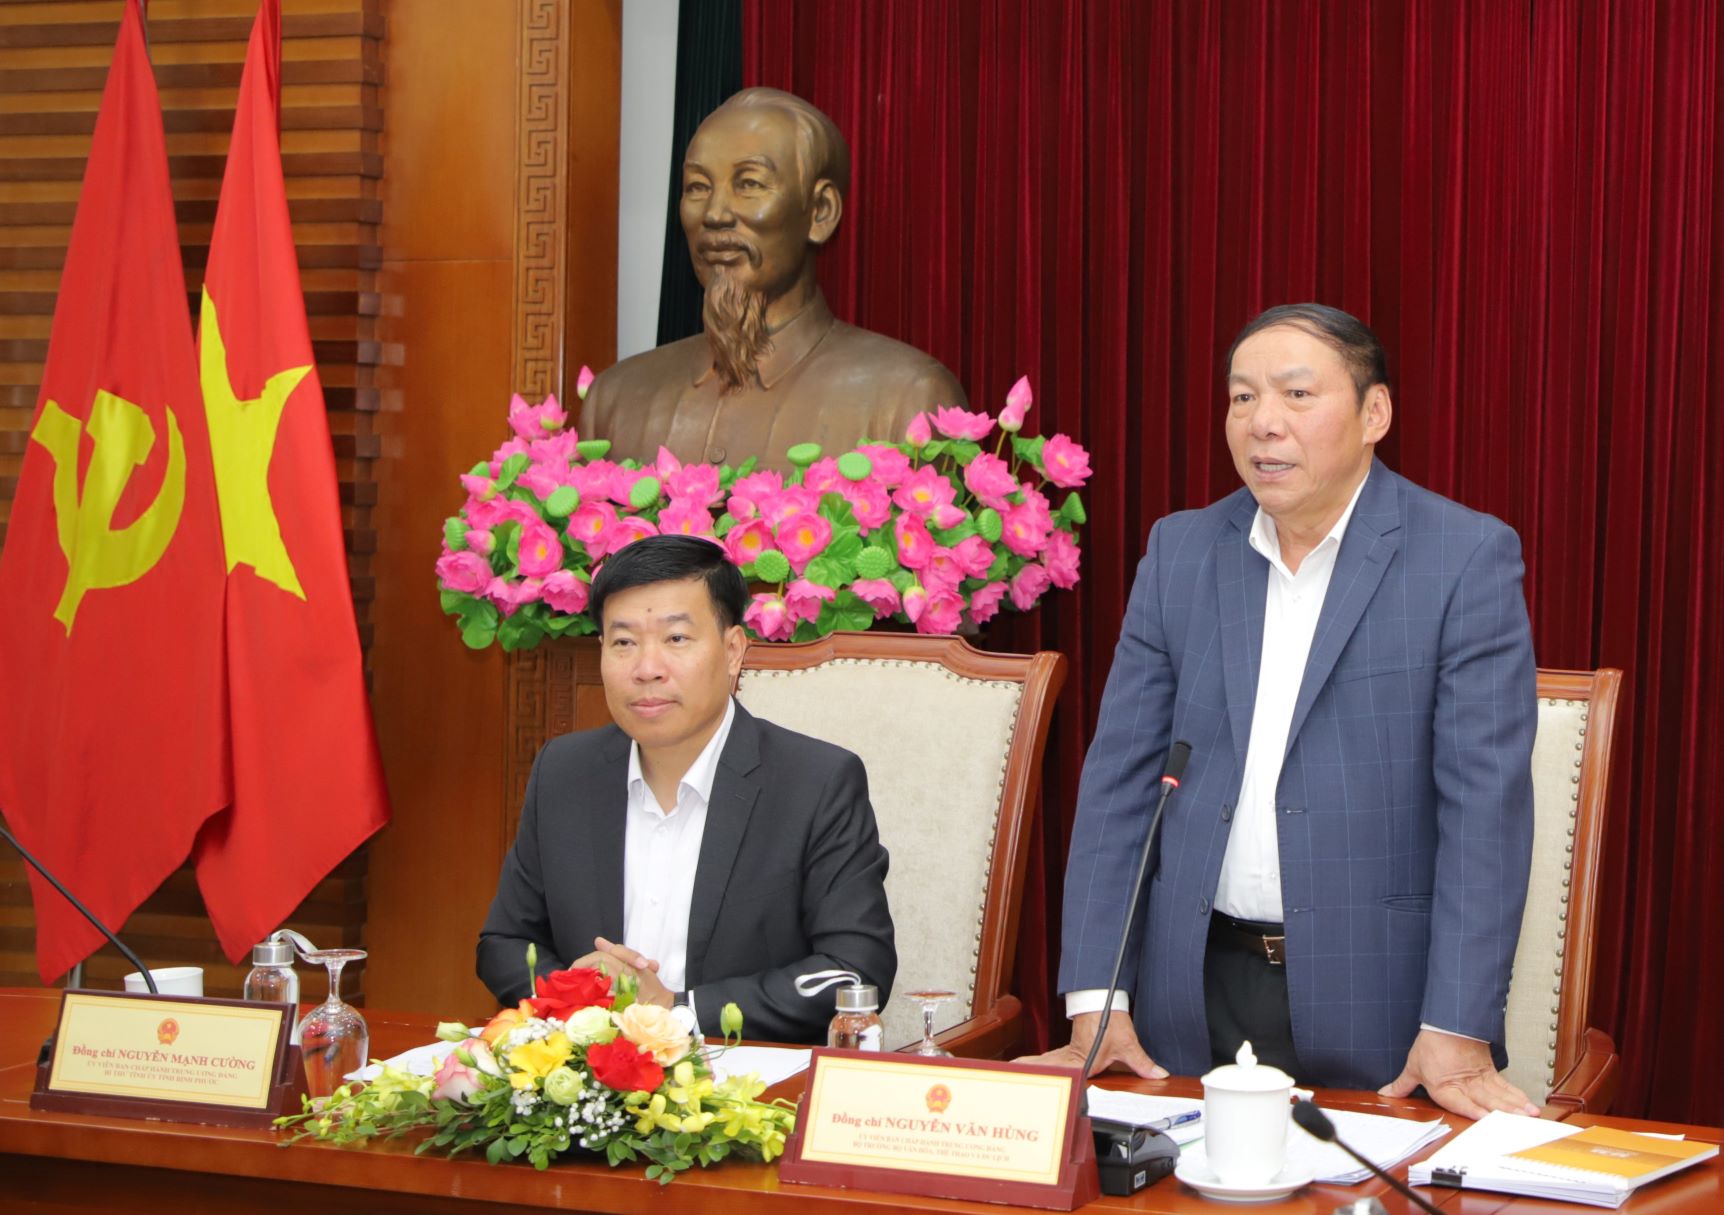 Bộ trưởng Nguyễn Văn Hùng: "Công nhận di tích, di sản đã khó, bảo tồn, phát huy được nó còn khó hơn"